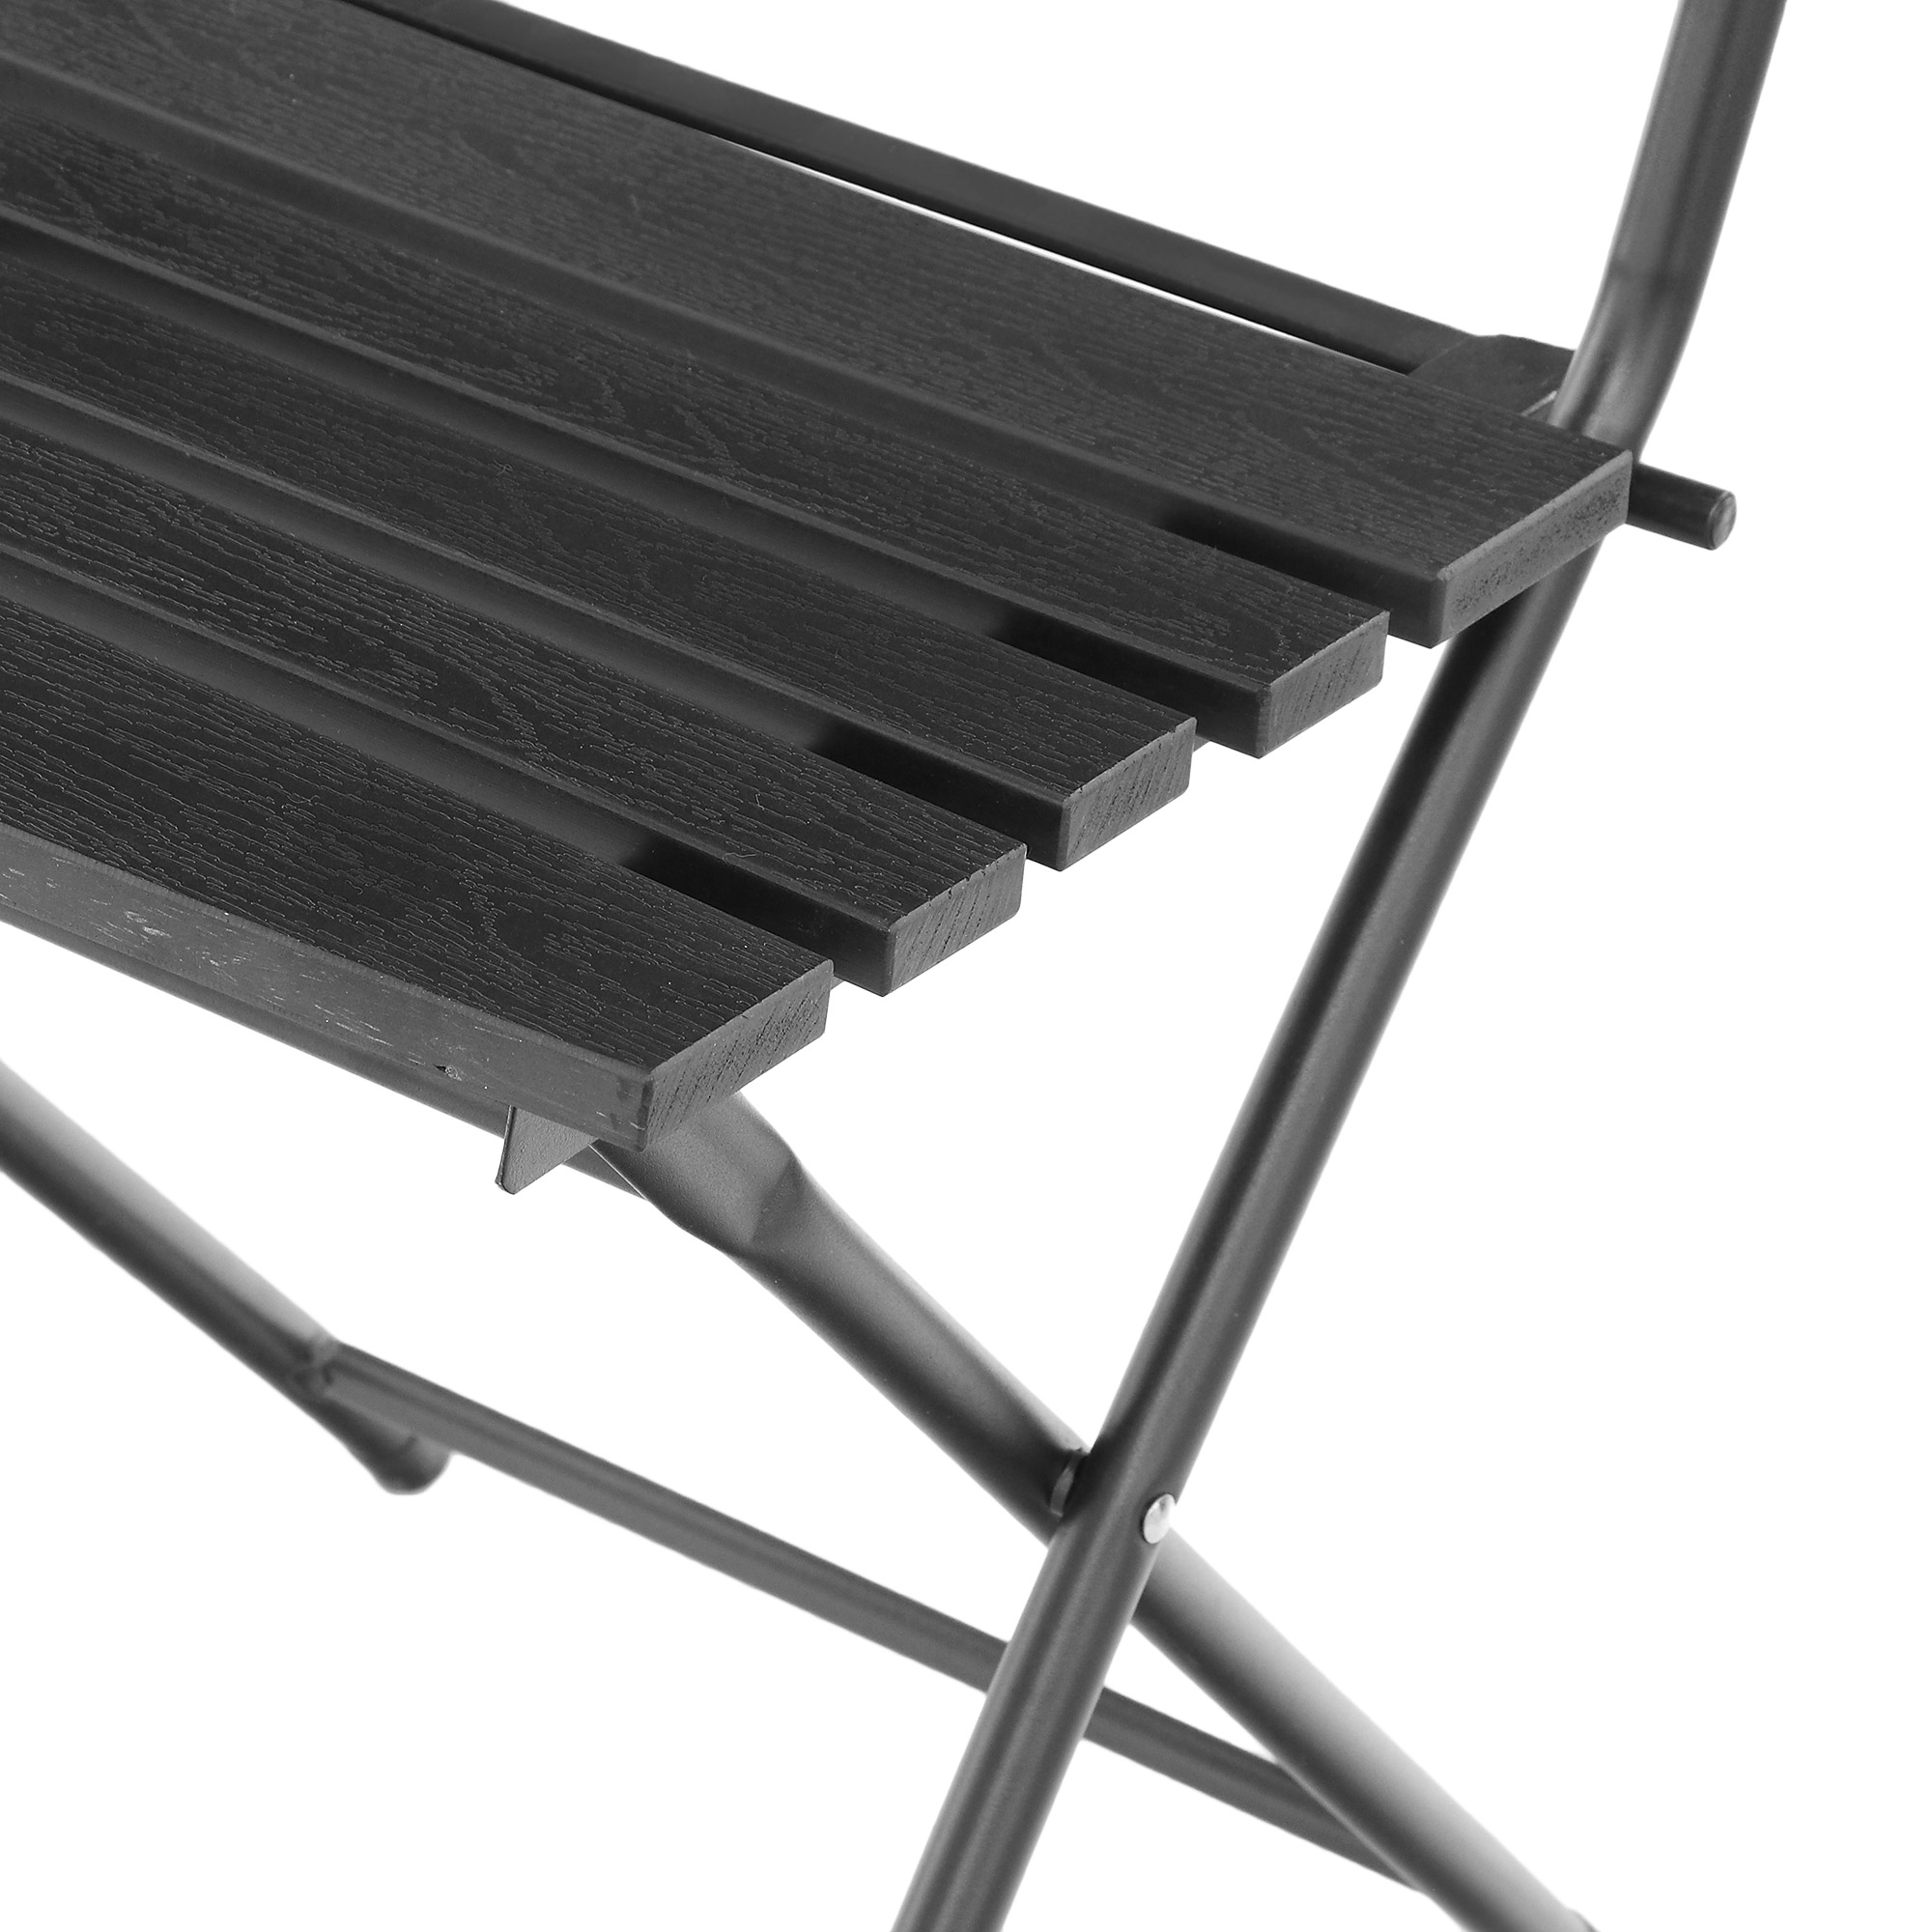 Набор садовой мебели Koopman furniture стол+2 стула, цвет черный, размер 60х60x70 см - фото 7